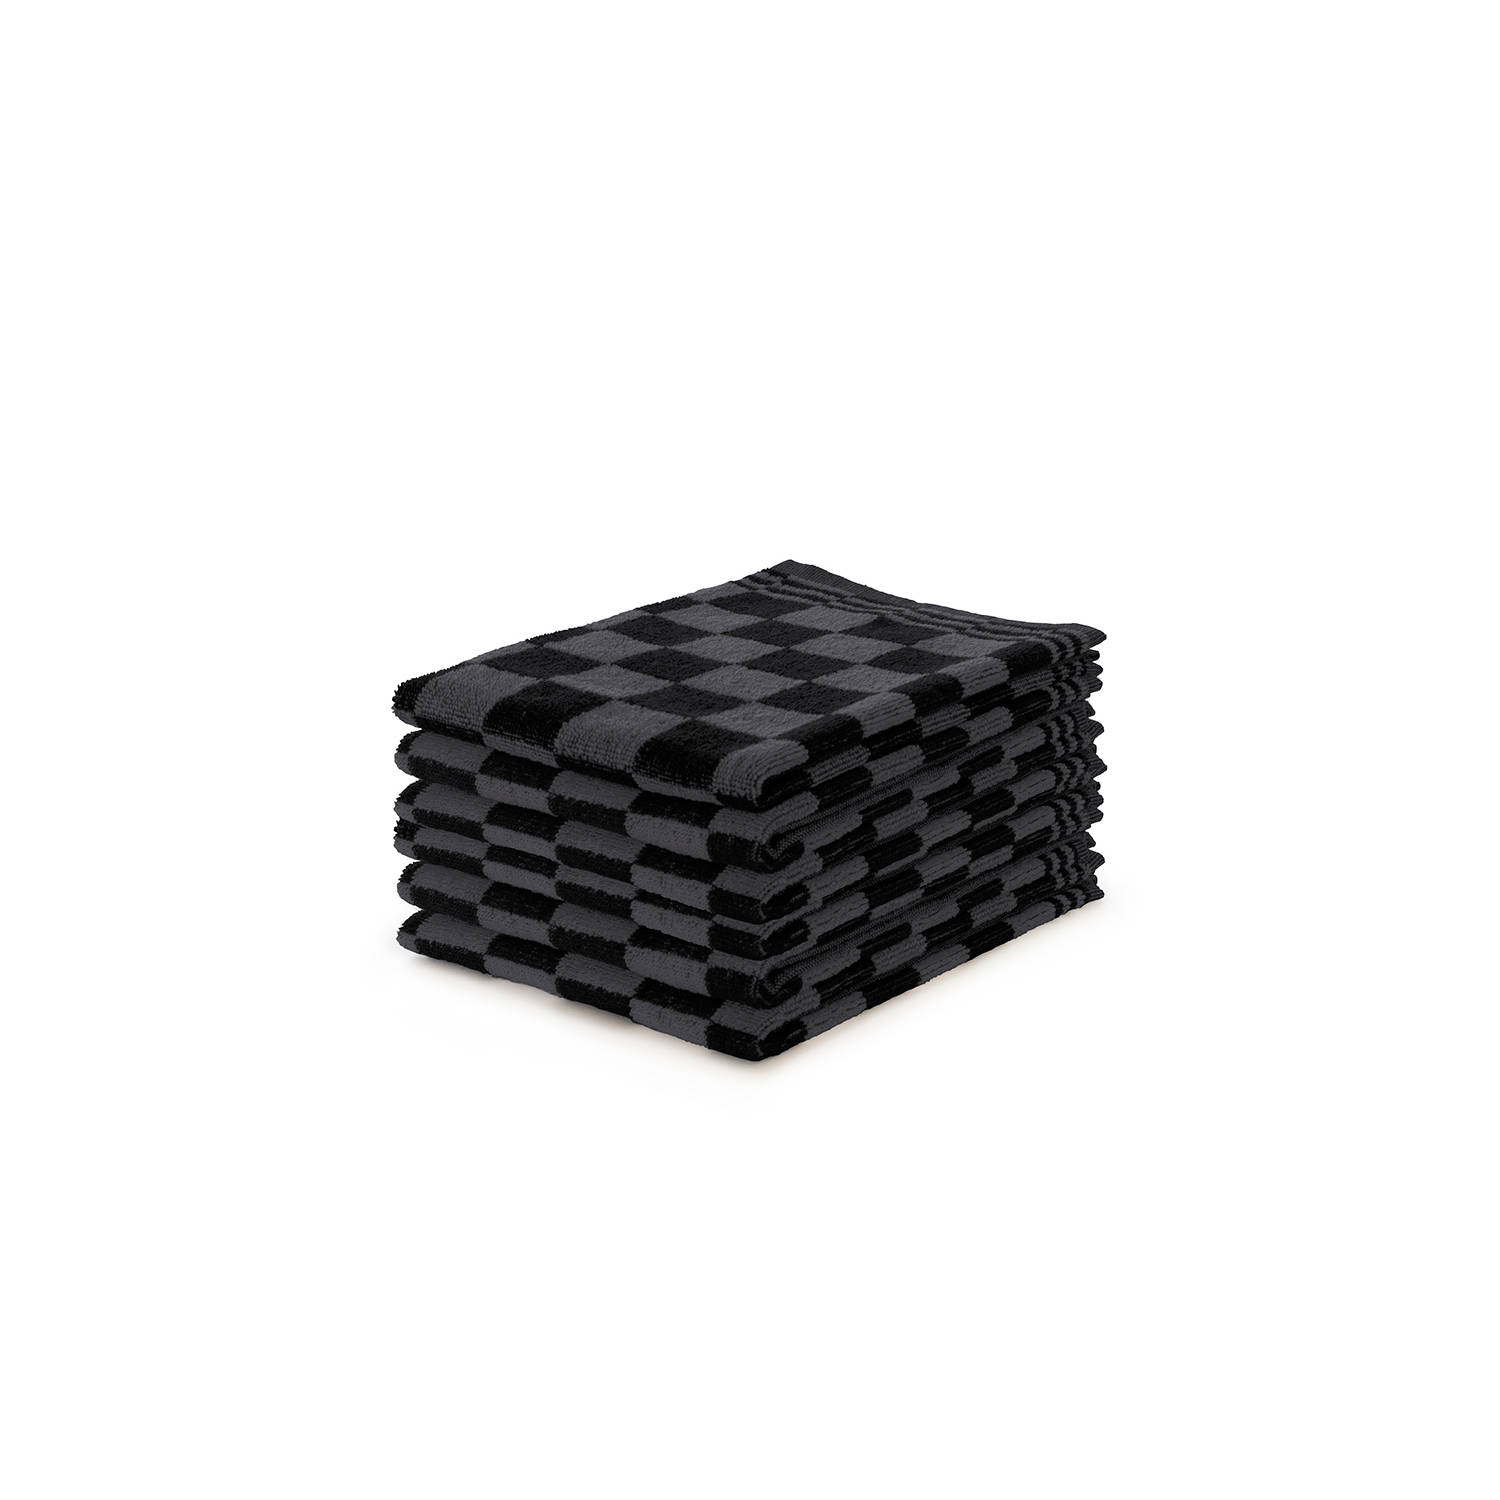 Ten Cate Keukendoeken Set Blok Zwart – 50x50 – Set van 6 – Geblokt – Blokdoeken – 100% katoen – Keukendoek – handdoeken